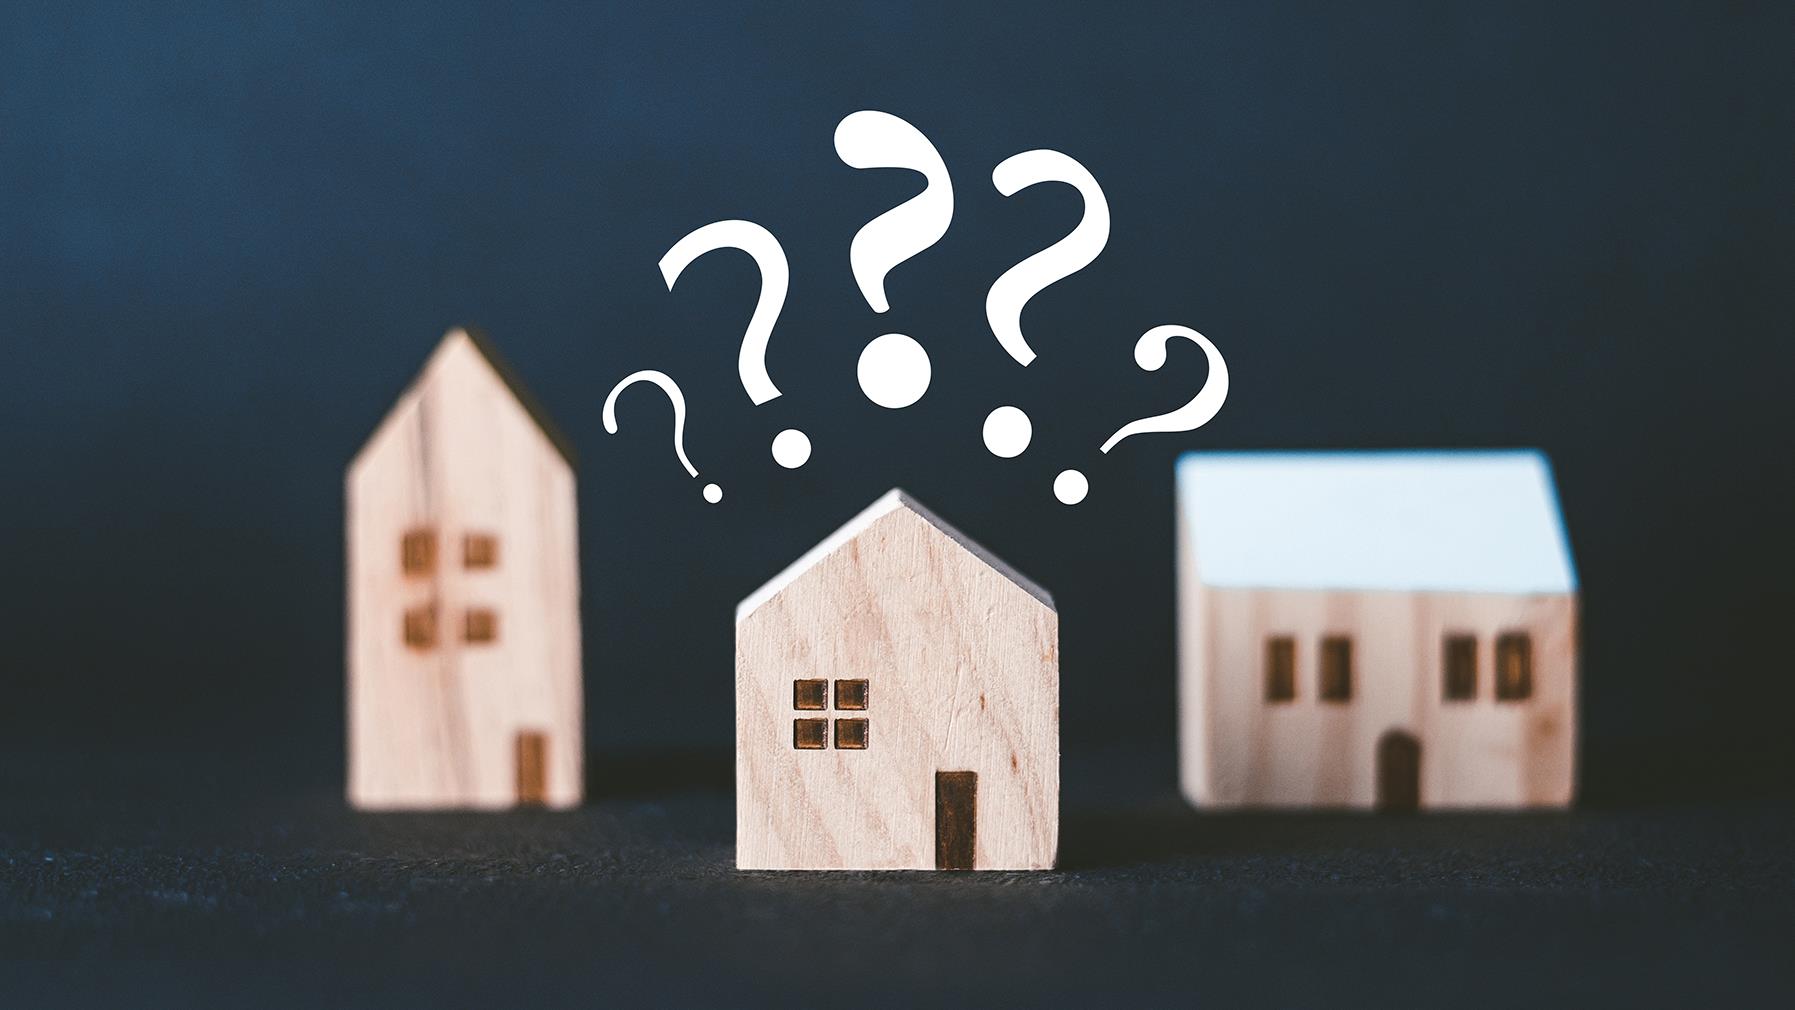 Crise du logement  :  trois mythes sur le contexte immobilier au Canada
Crise du logement  :  trois mythes sur le contexte immobilier au Canada